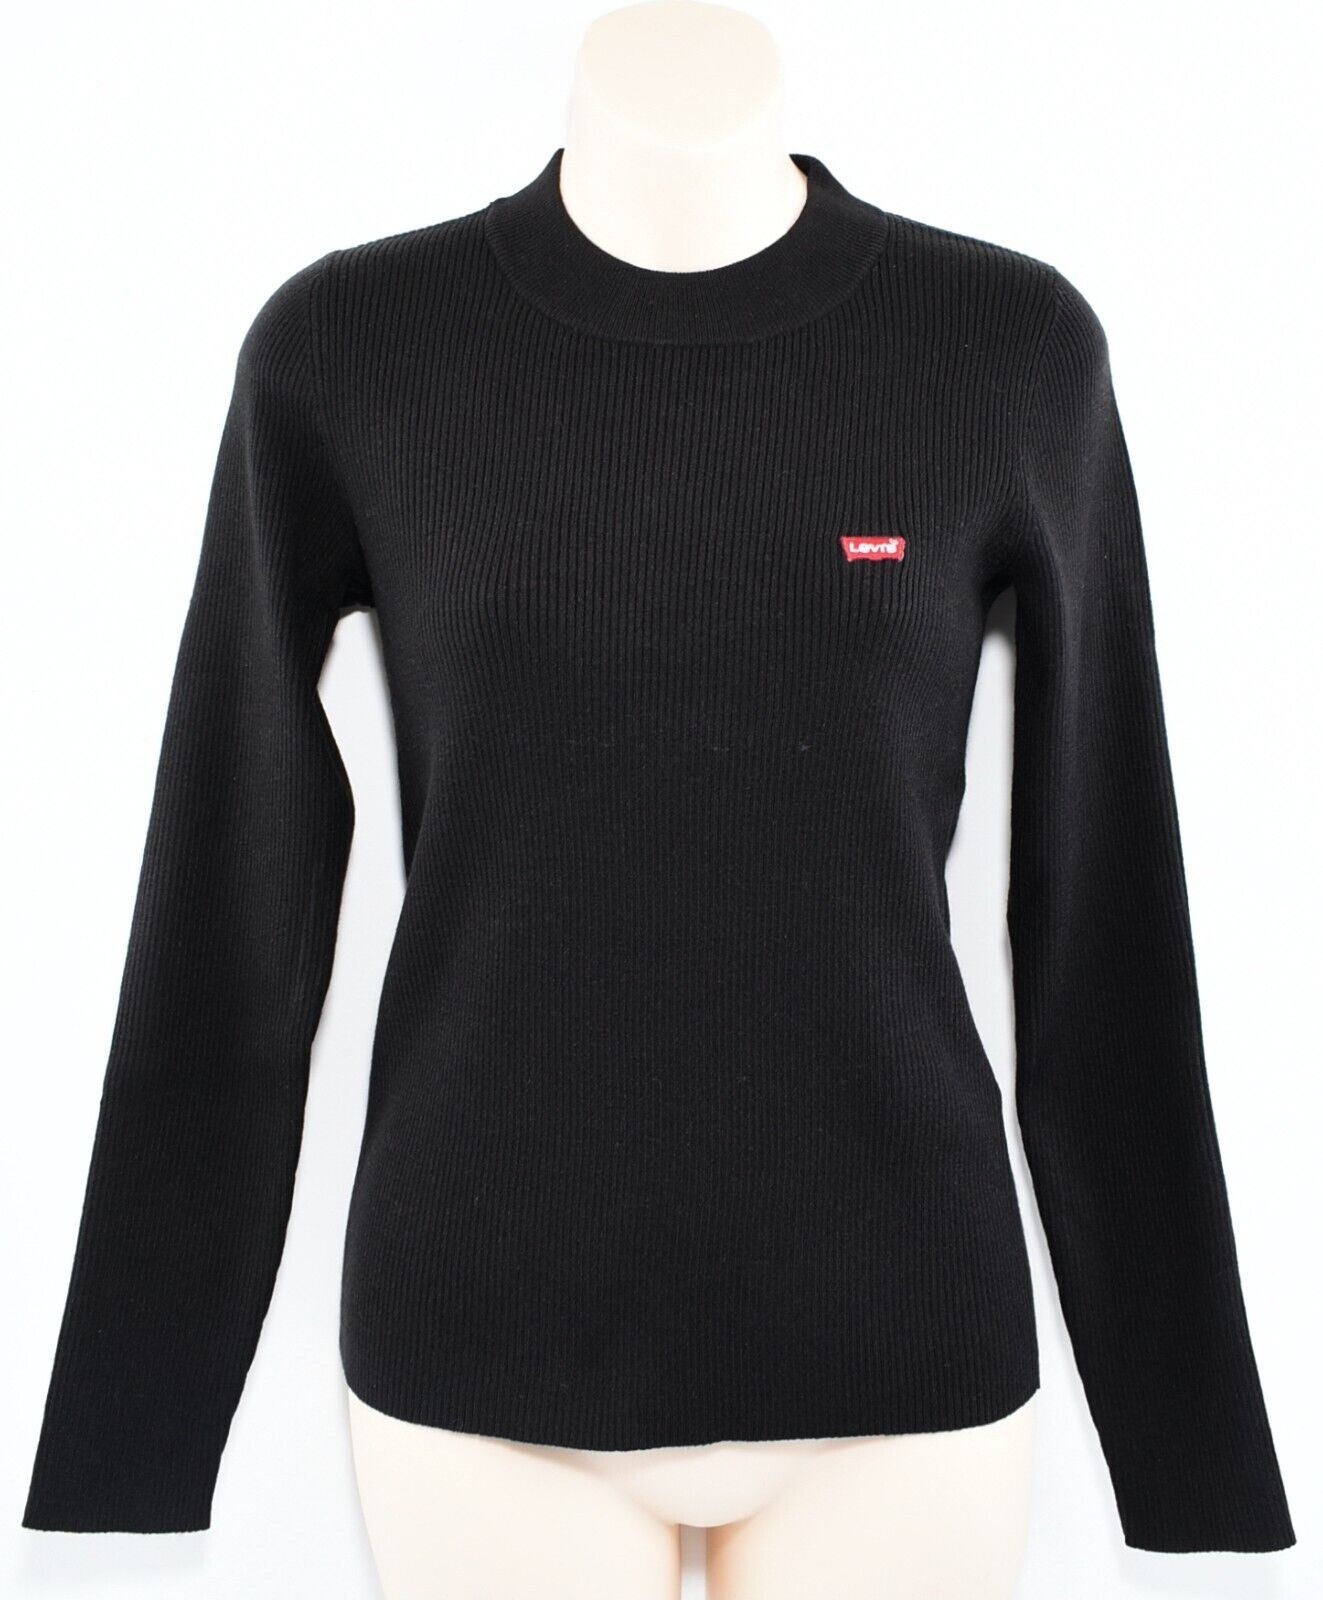 LEVI'S Women's Slim Fit Rib Knit Jumper /Sweater, Caviar Black, size M (UK 12)